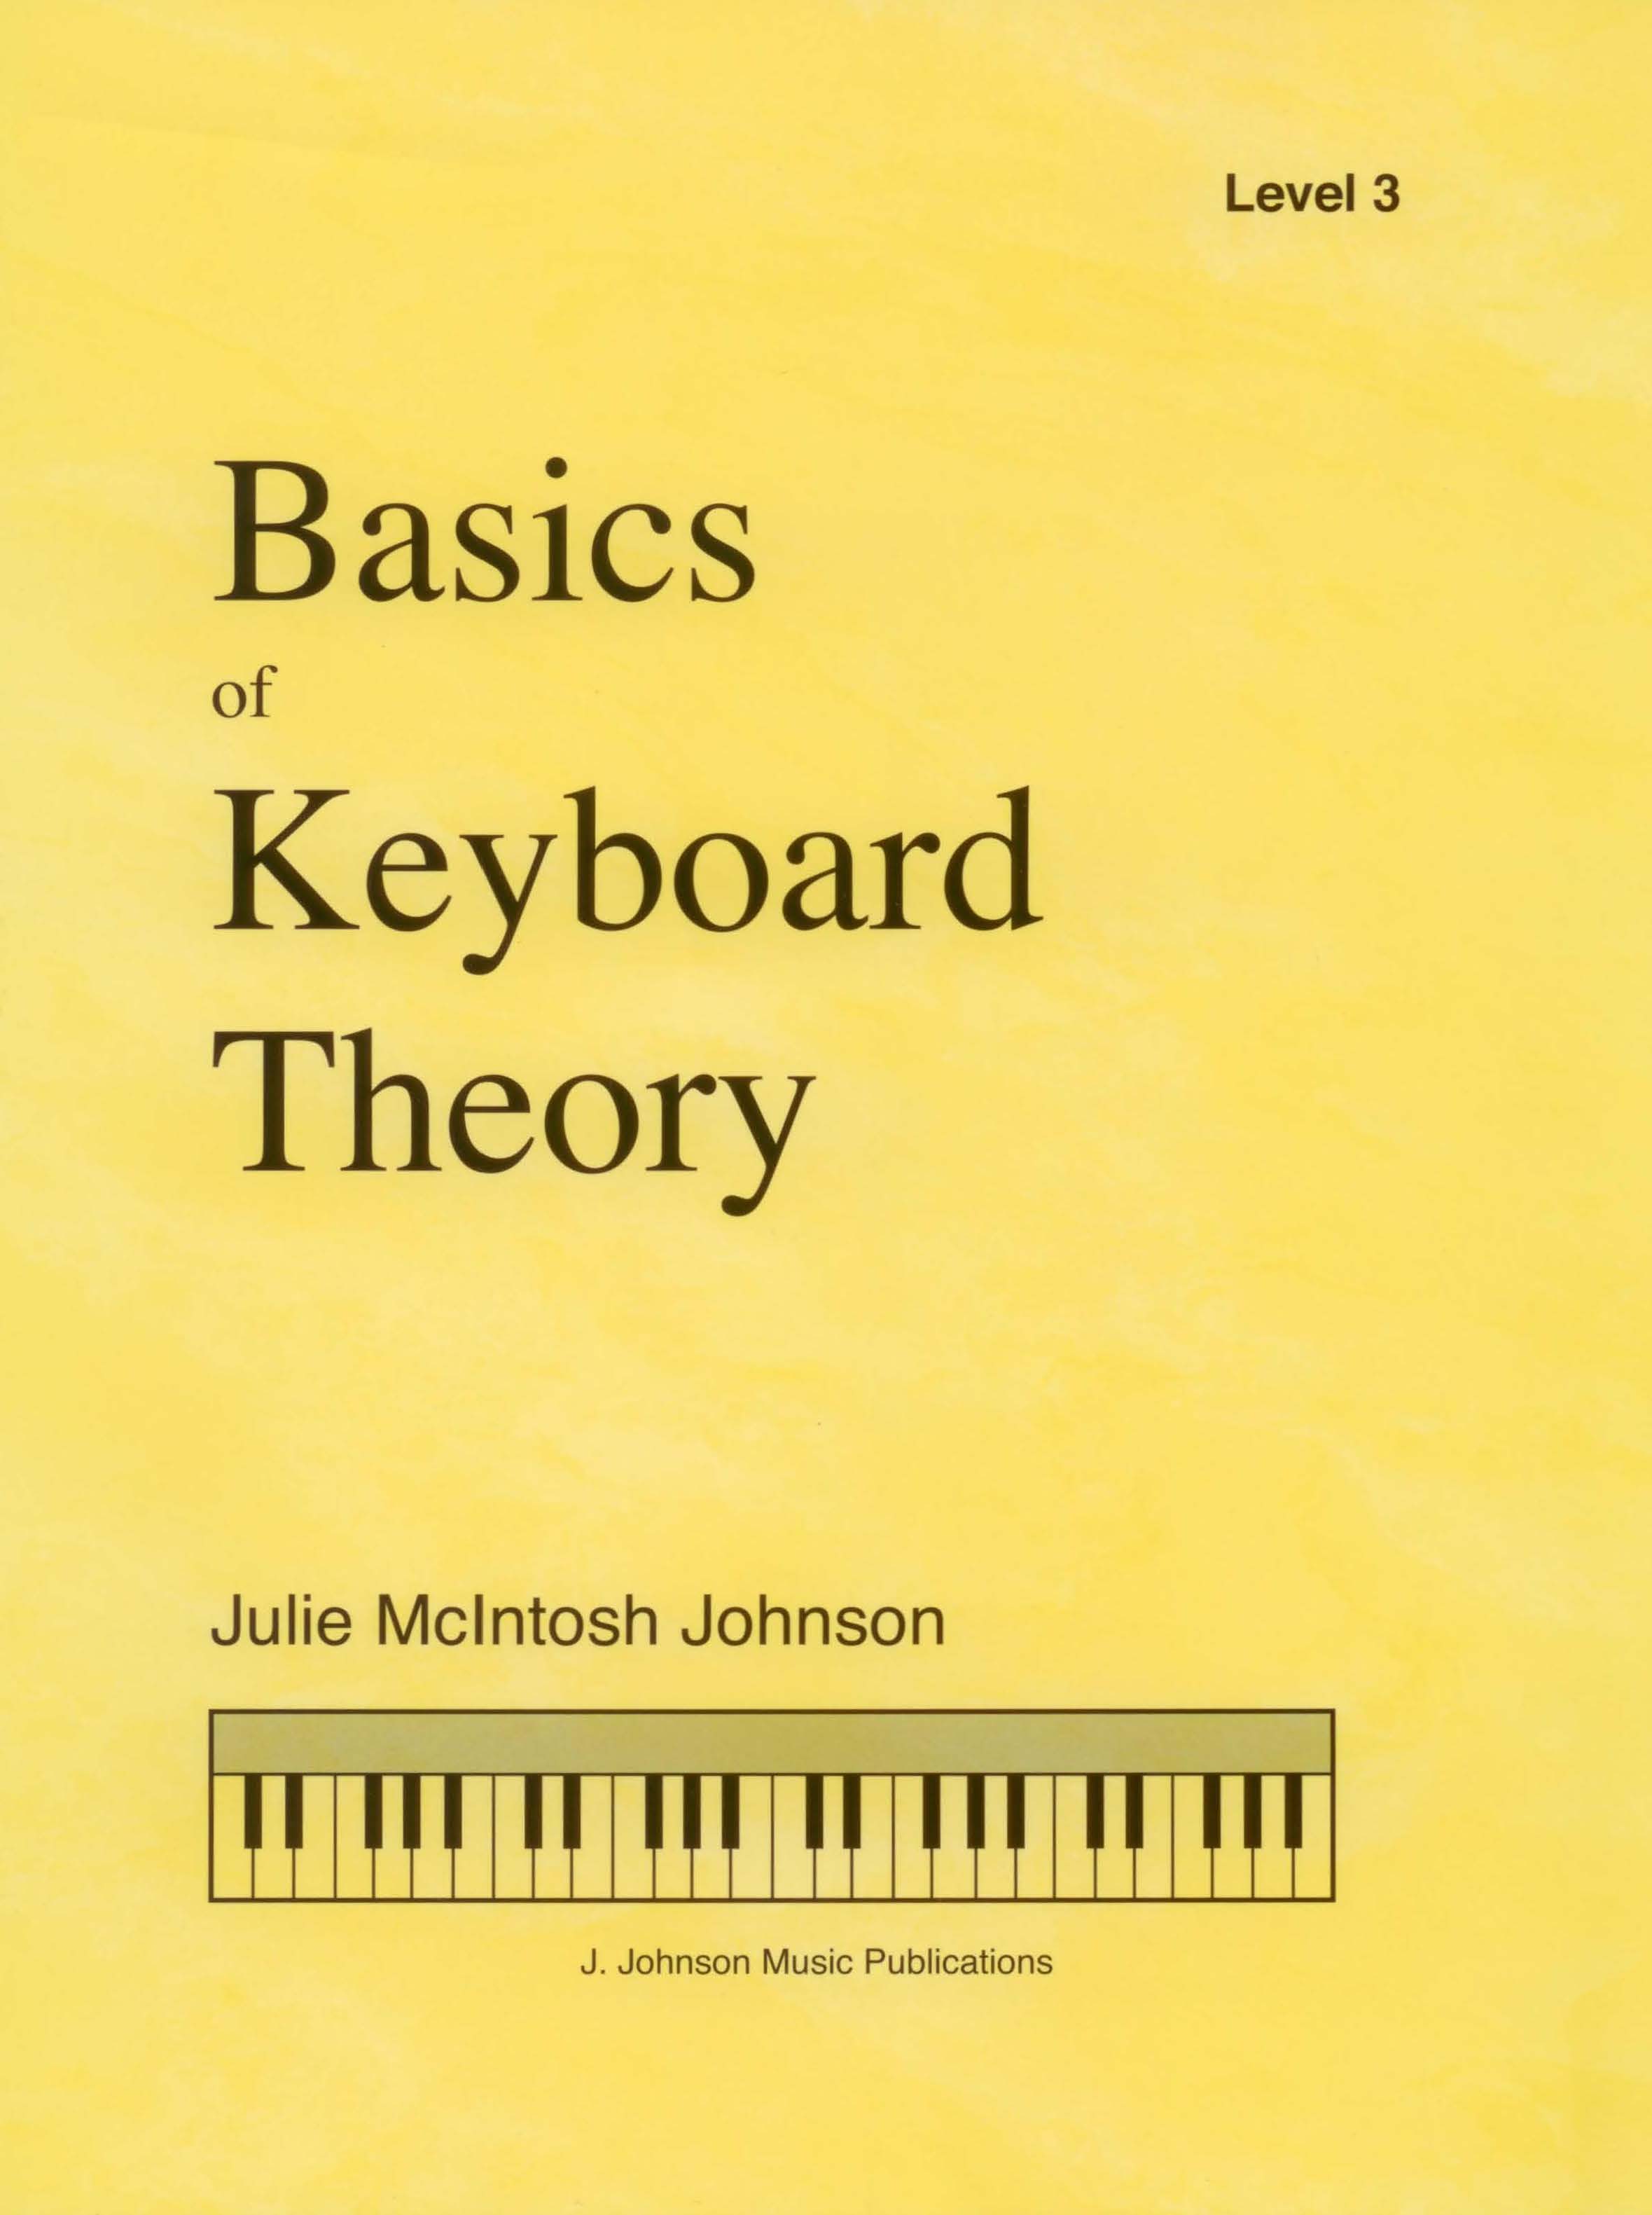 Basics of Keyboard Theory Level 3